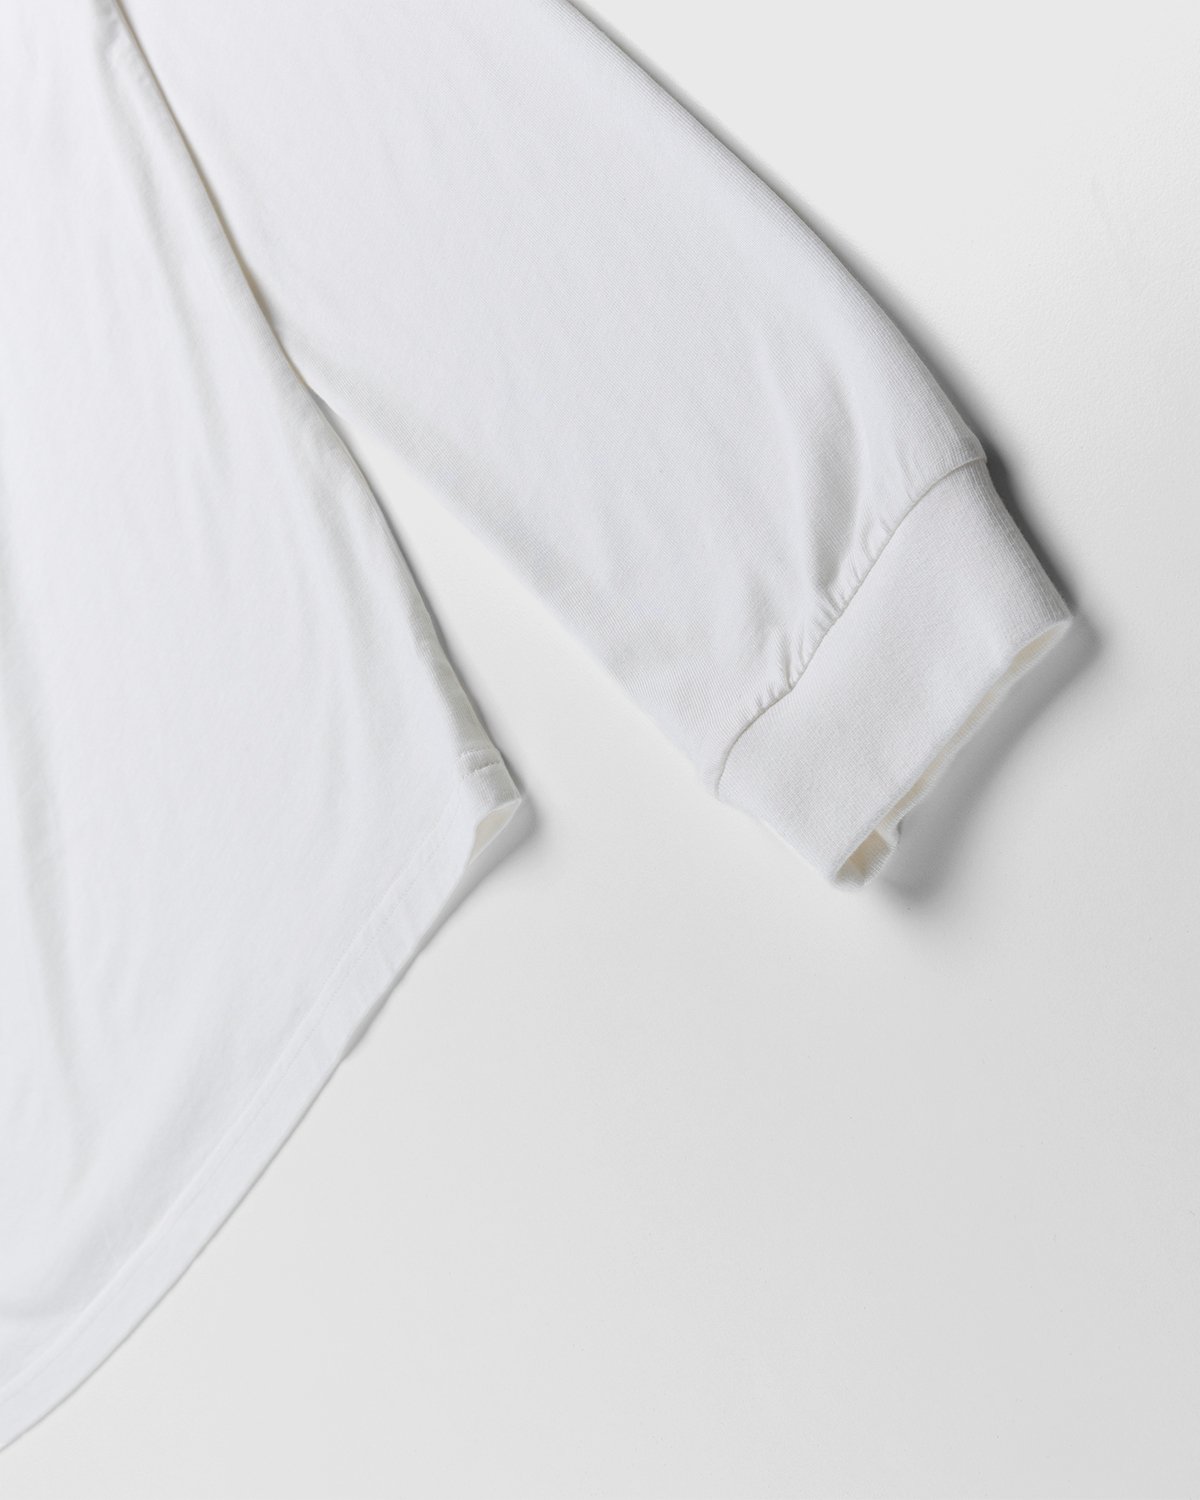 Phipps - Logo Longsleeve White - Clothing - White - Image 3